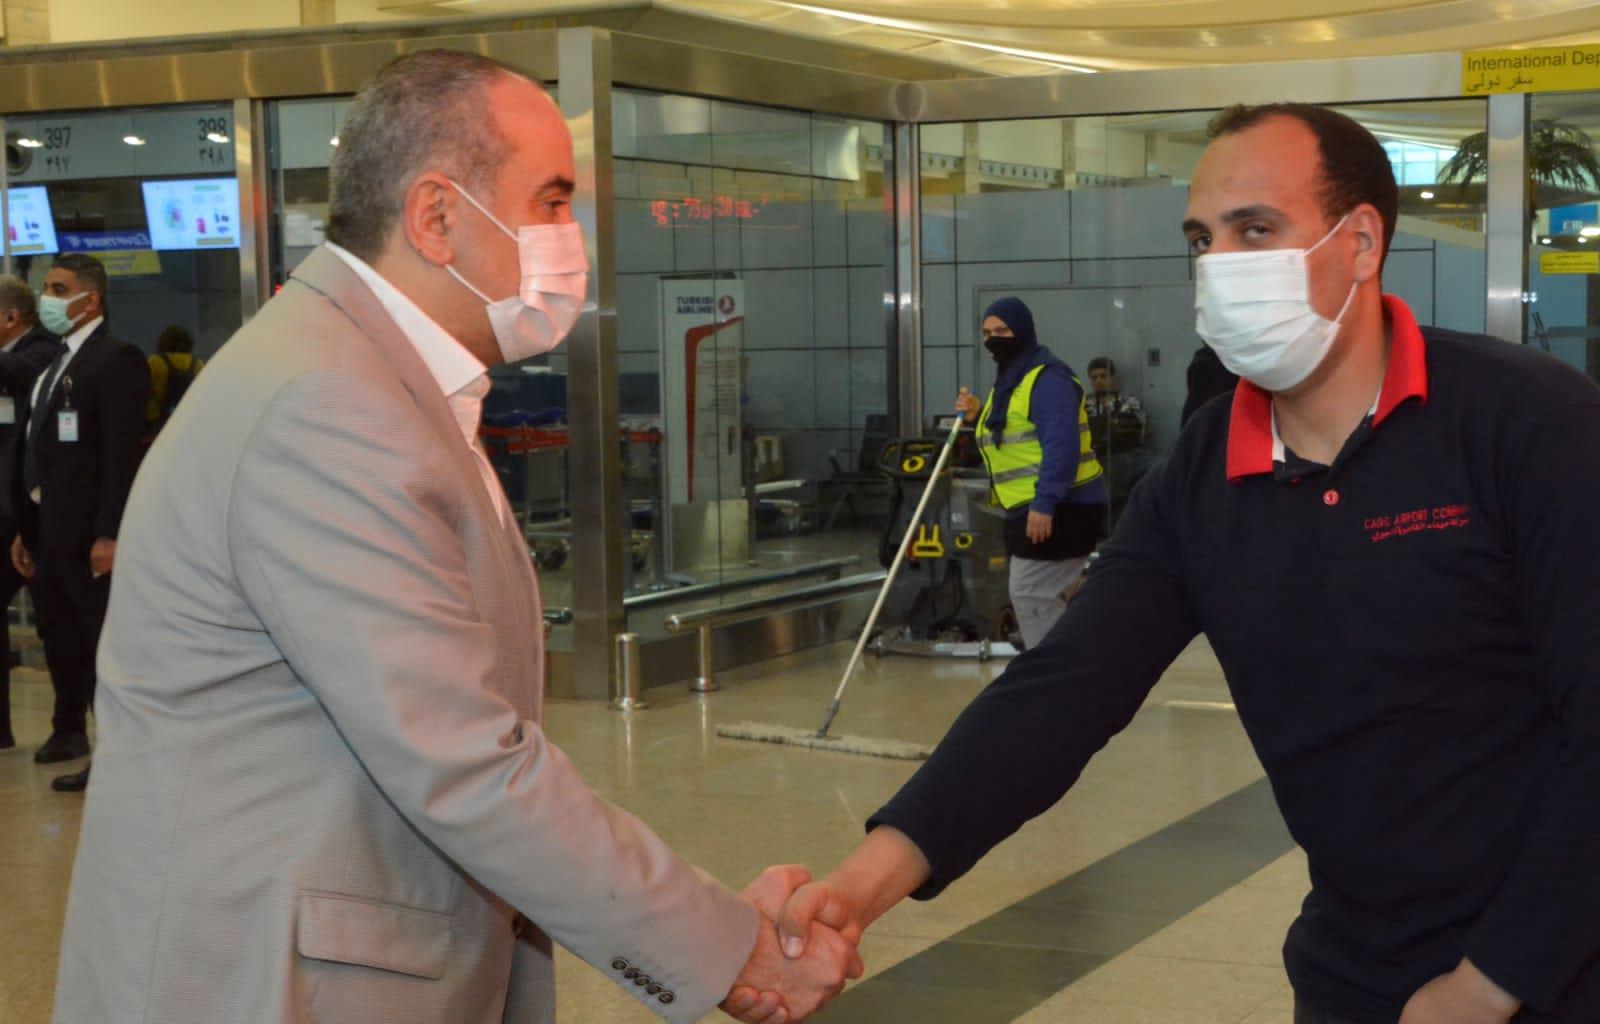  وزير الطيران يتفقد مطار القاهرة لمتابعة انتظام التشغيل وتهنئة العاملين والمسافرين